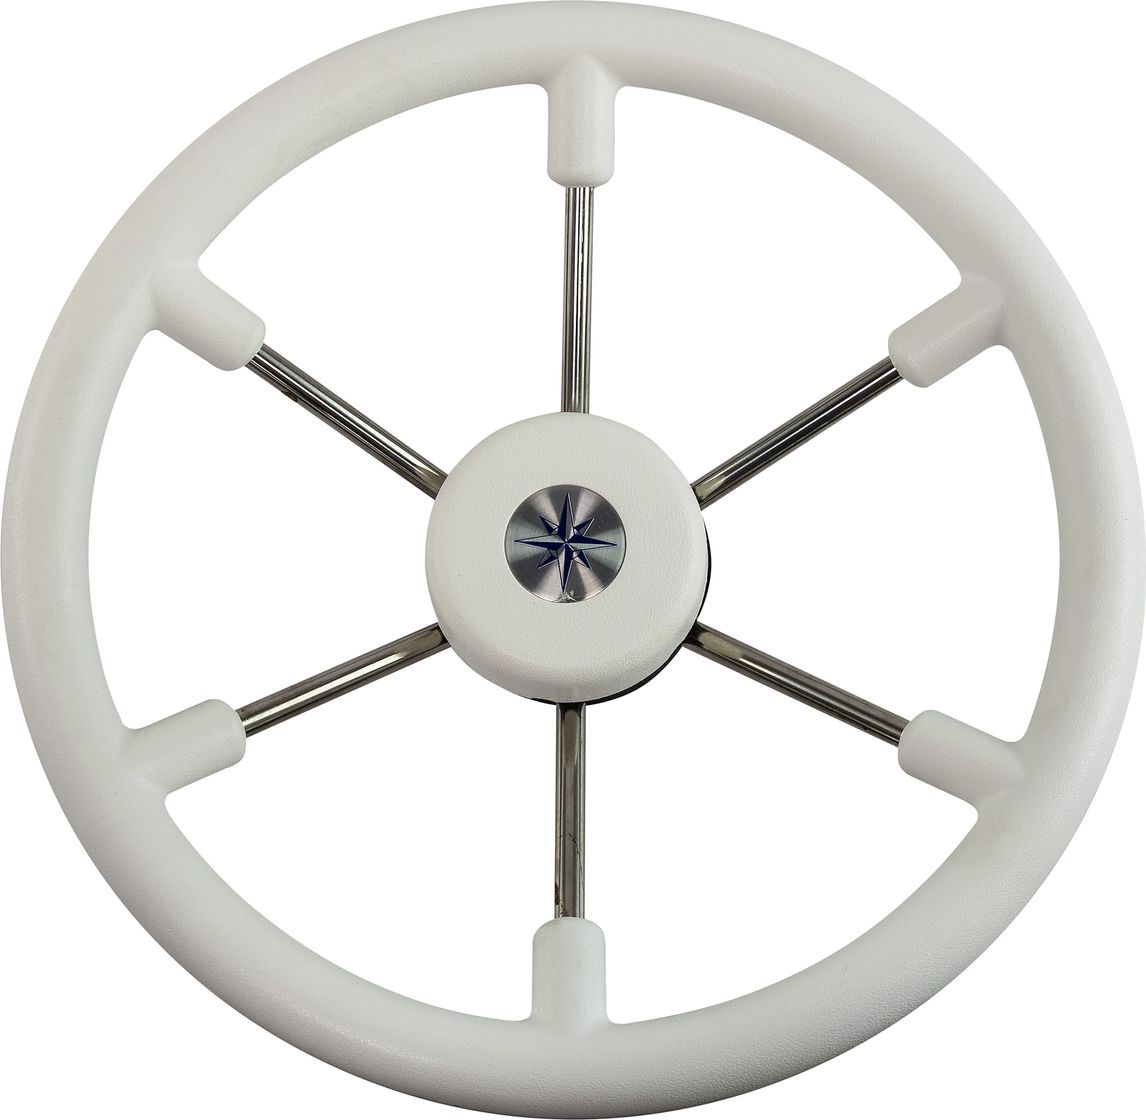 Рулевое колесо LEADER TANEGUM белый обод серебряные спицы д. 360 мм VN7360-08 рулевое колесо riviera белый обод и спицы д 350 мм vn8001 08